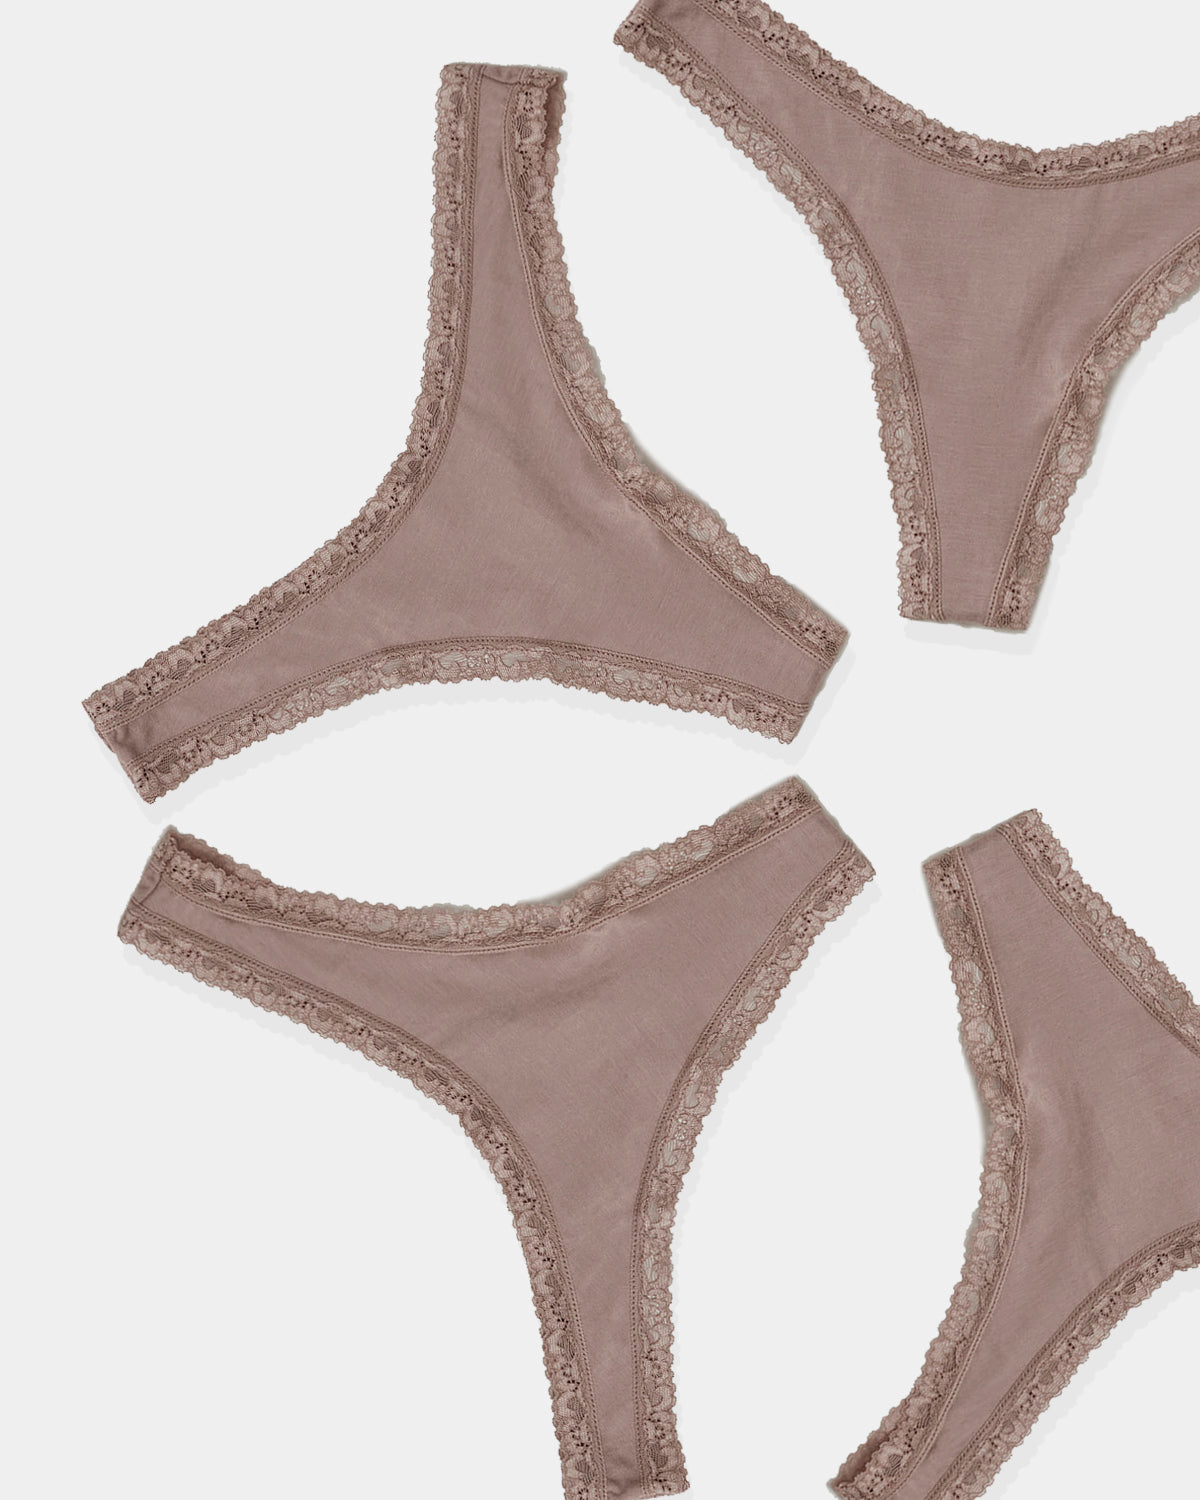 💕String Bikini Panties 6-Pack Secret Treasures💕